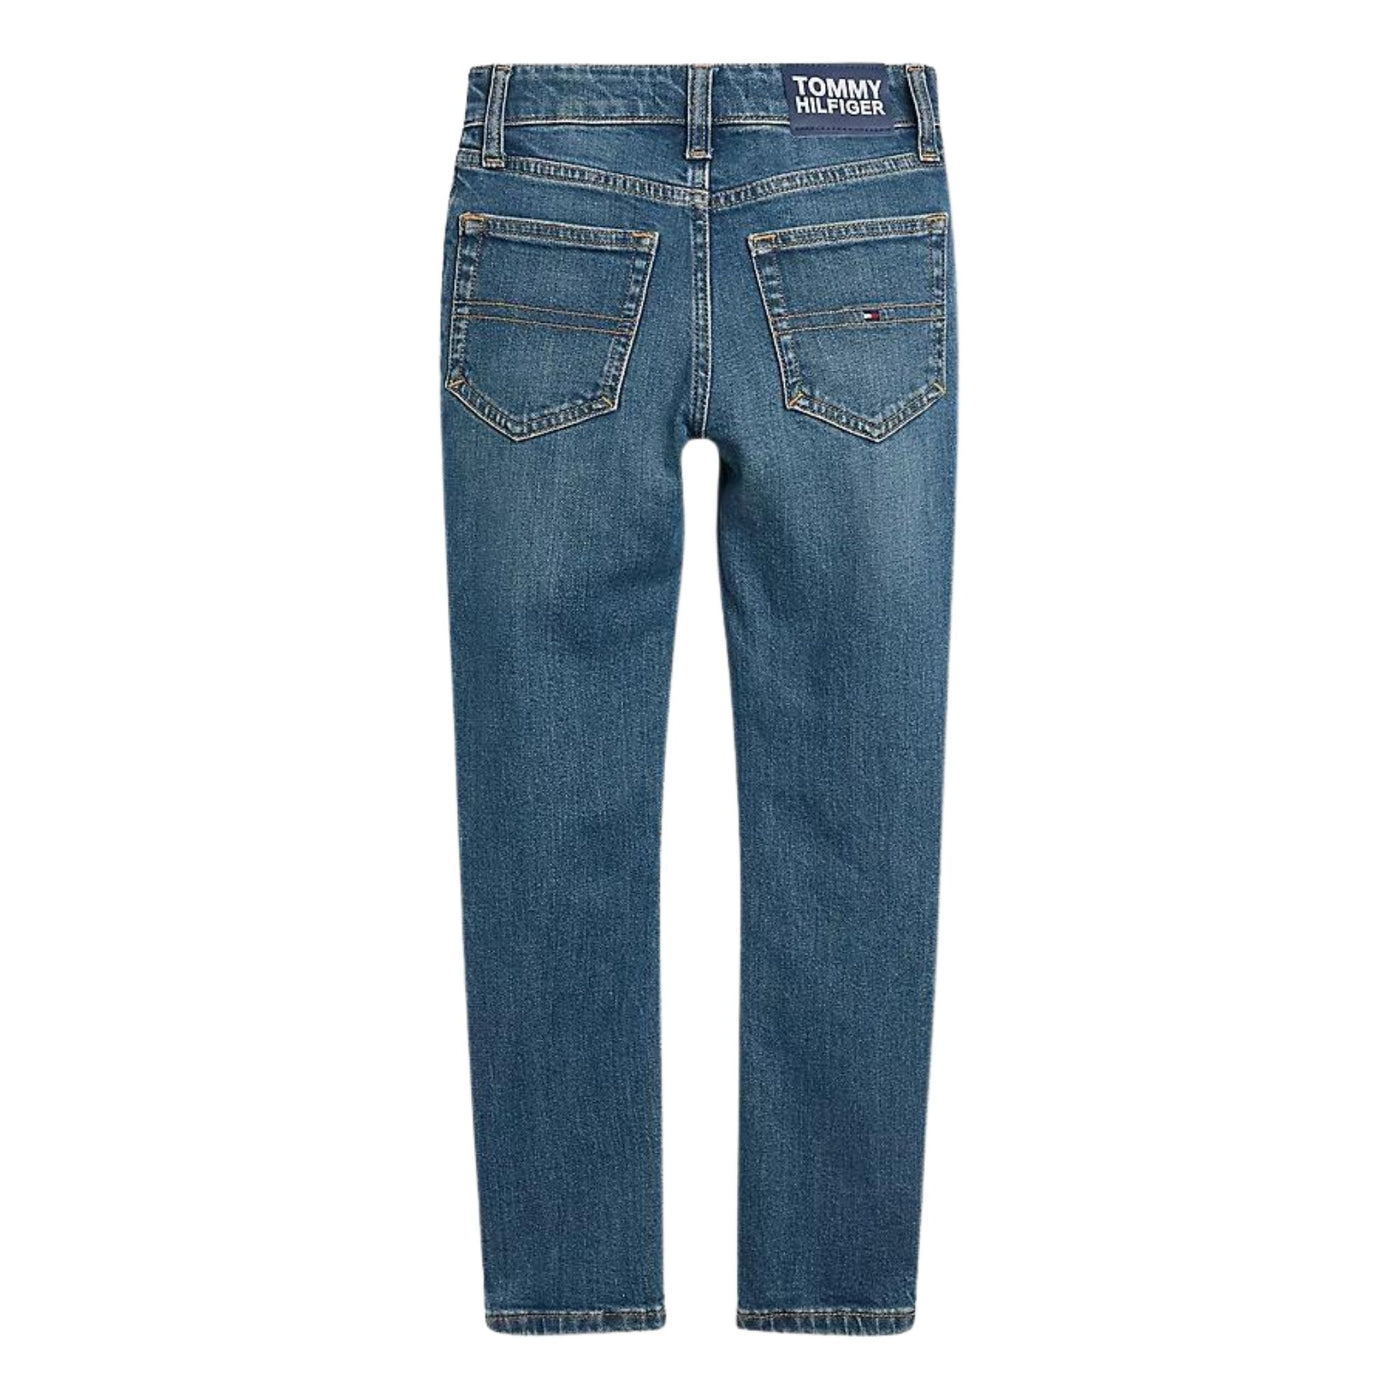 Jeans da bambino 8-16 anni realizzati in misto cotone con cinque tasche e chiusura con bottone e zip. 